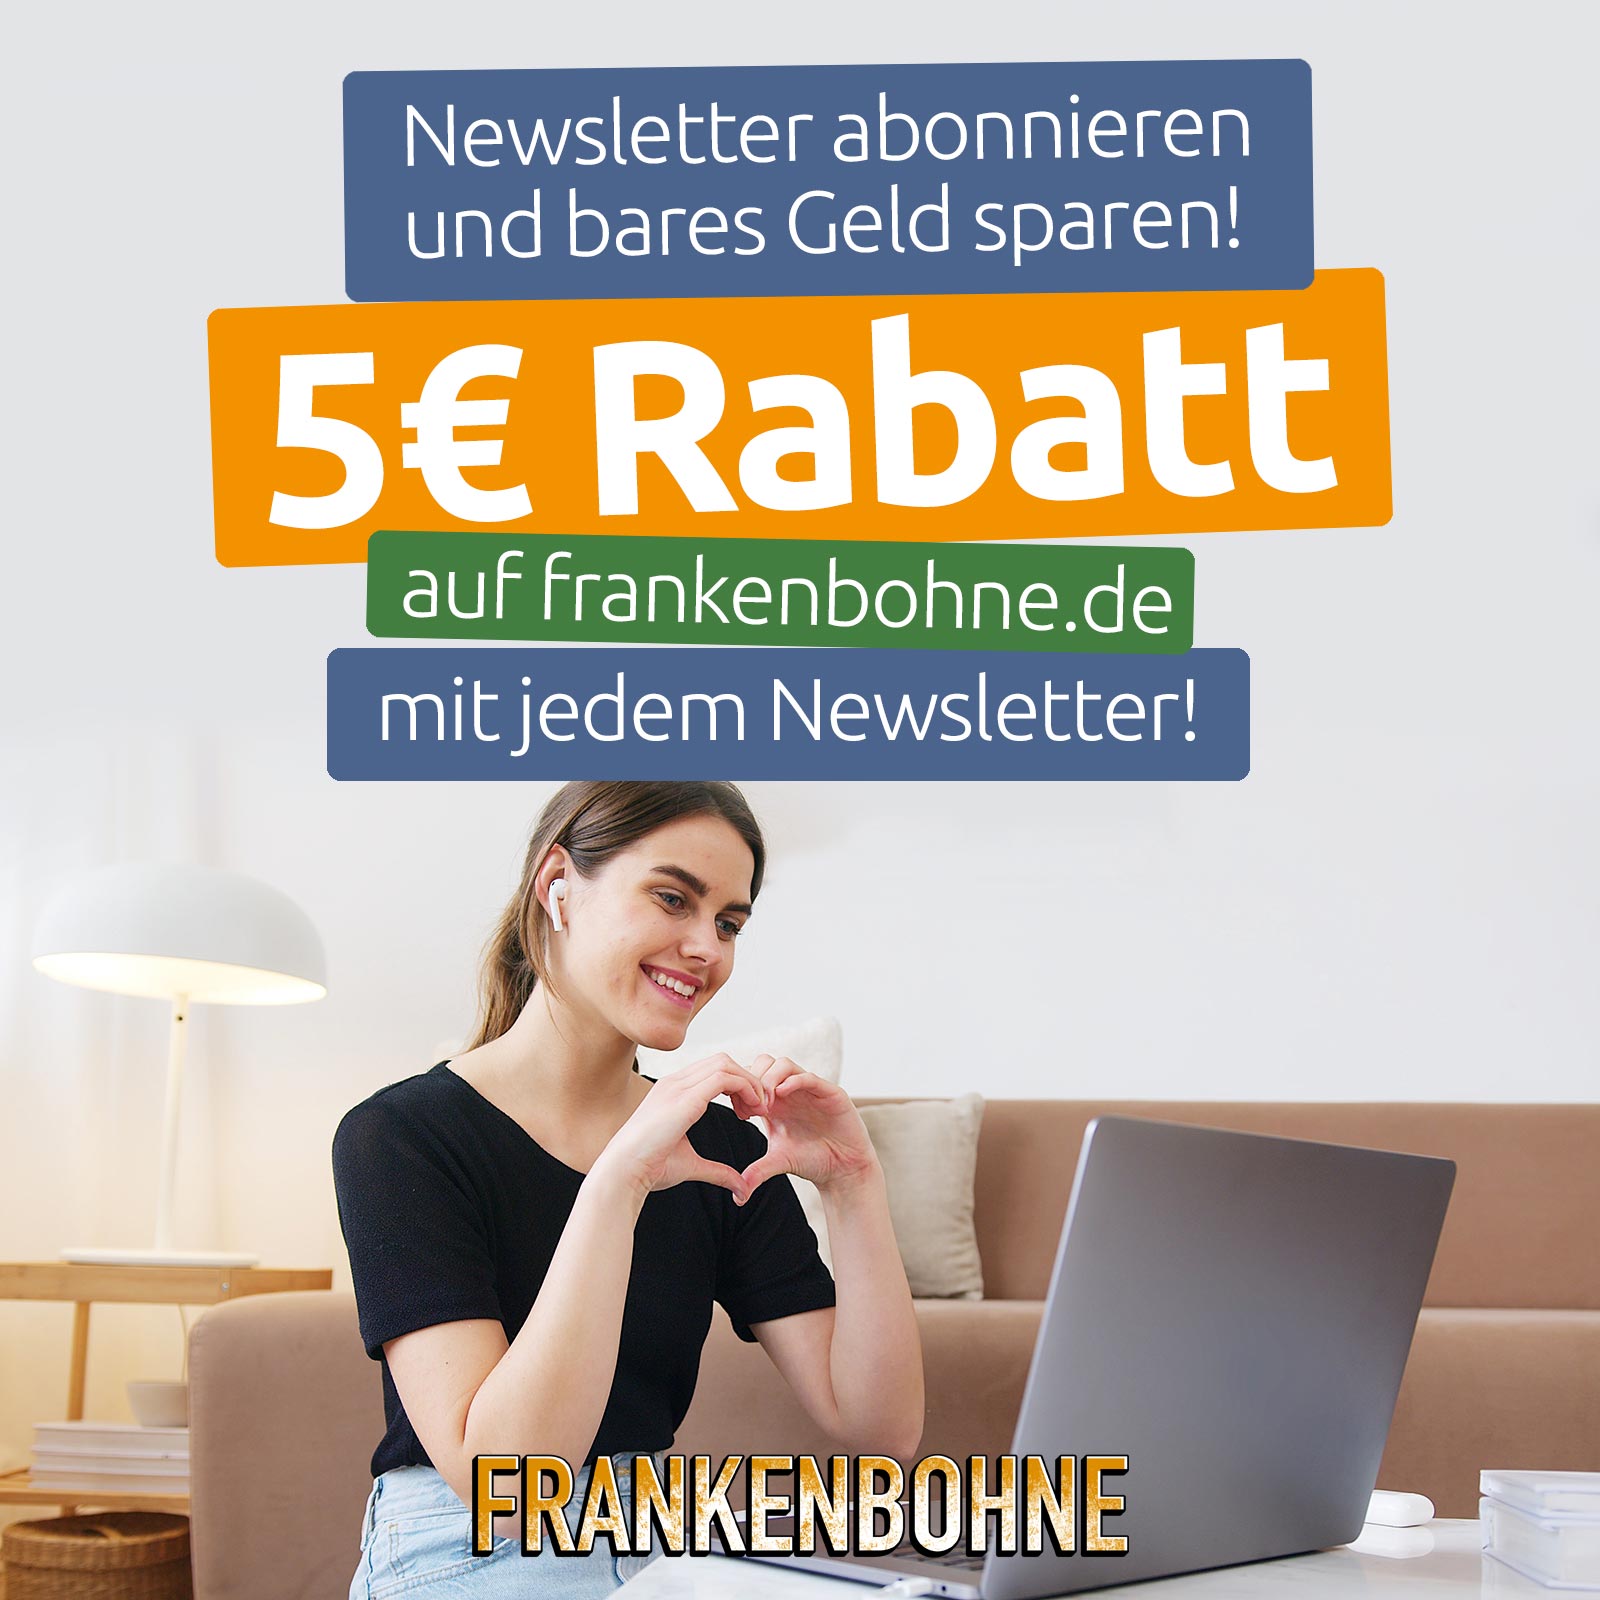 5 Euro Rabatt mit jedem Newsletter